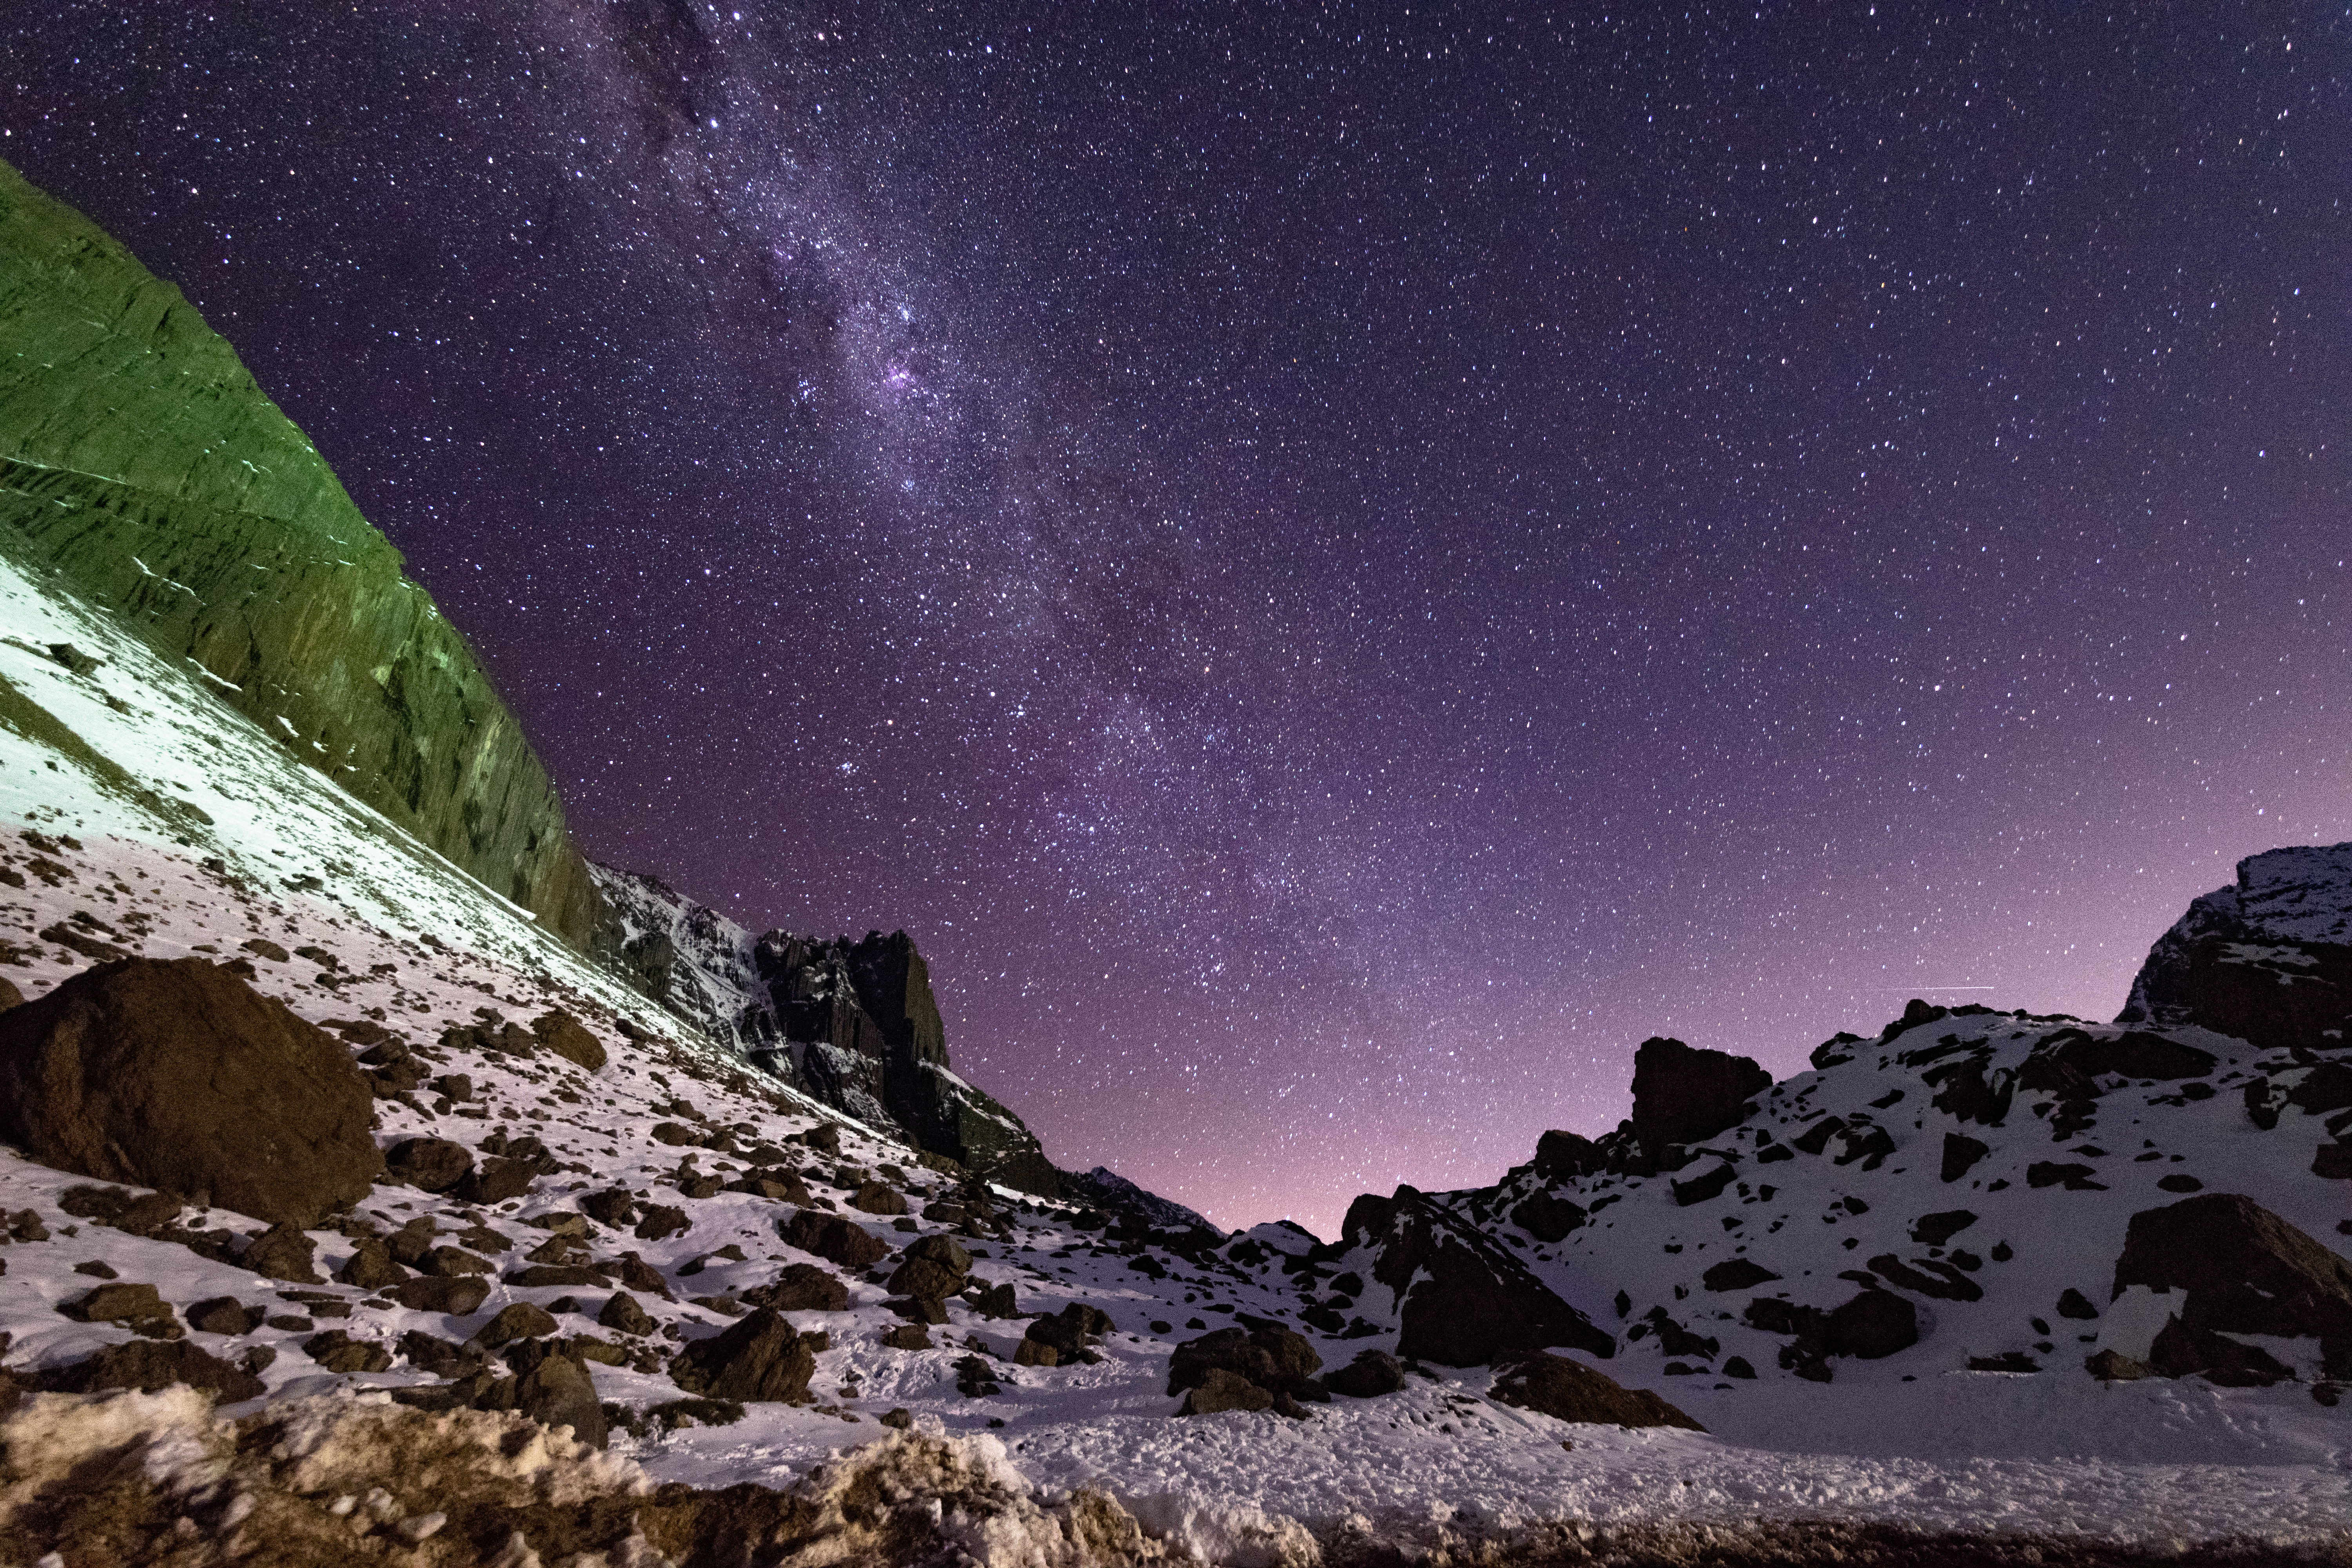 Widescreen image night, rocks, slope, nebula